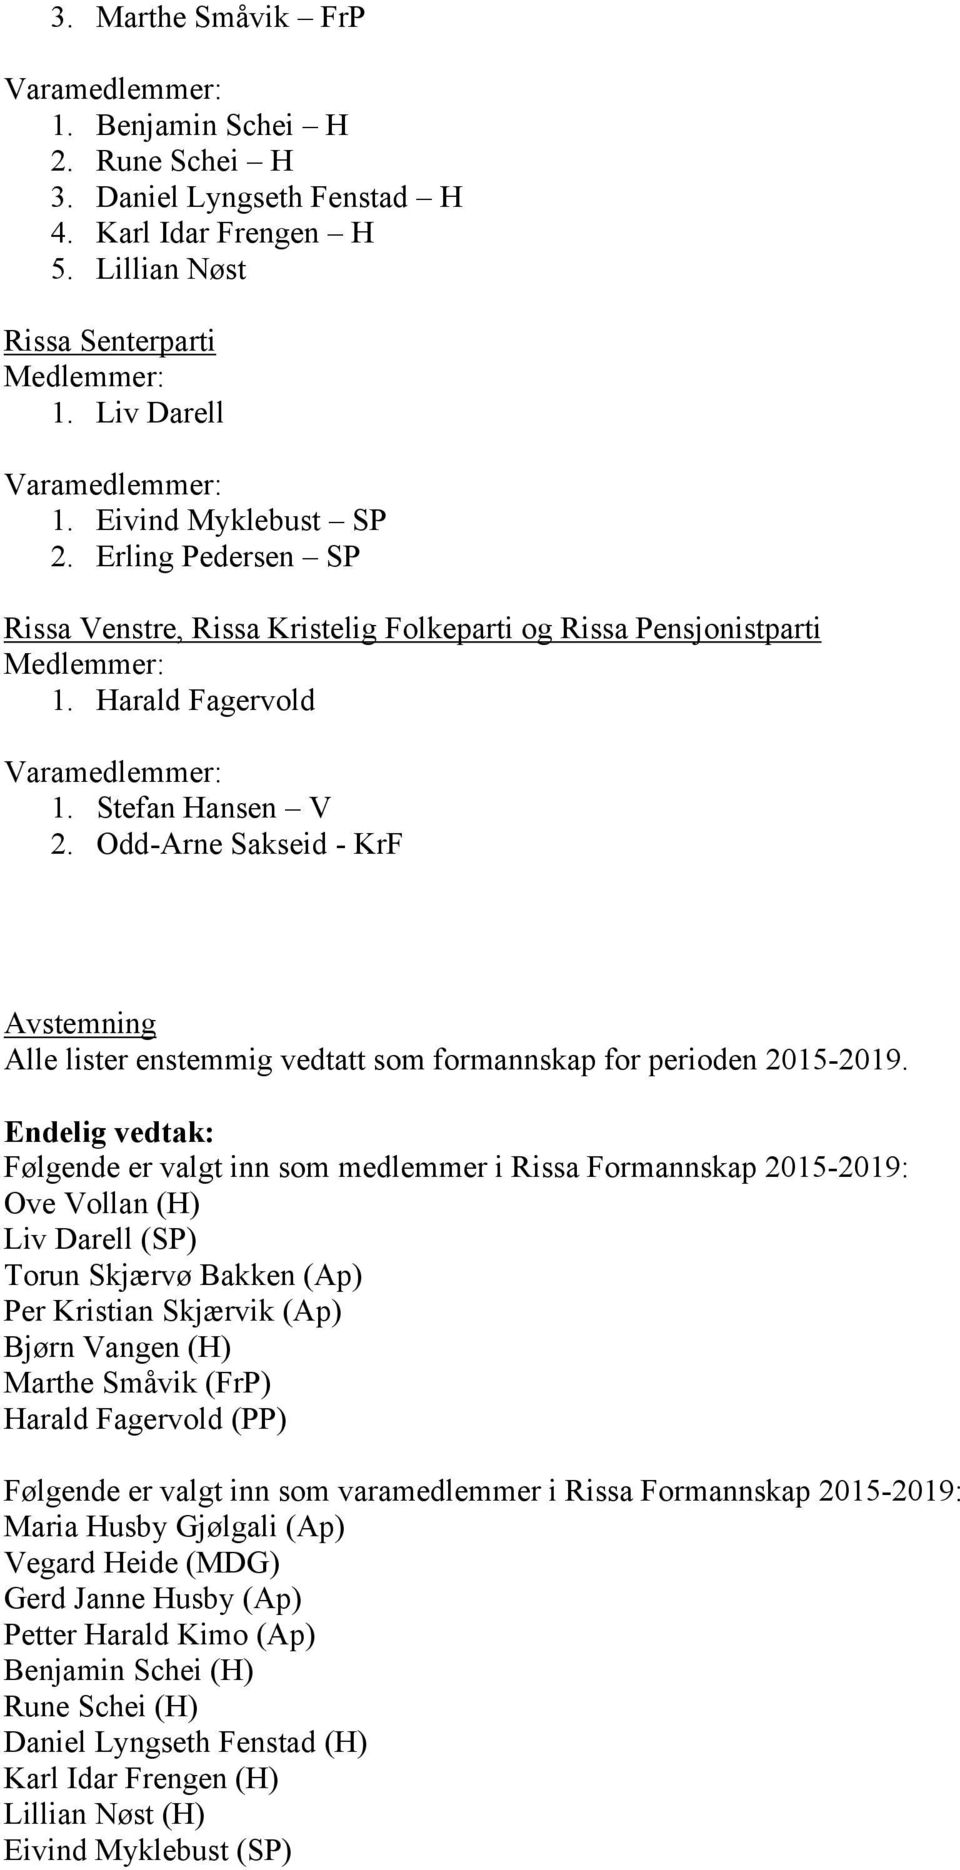 Odd-Arne Sakseid - KrF Avstemning Alle lister enstemmig vedtatt som formannskap for perioden 2015-2019.